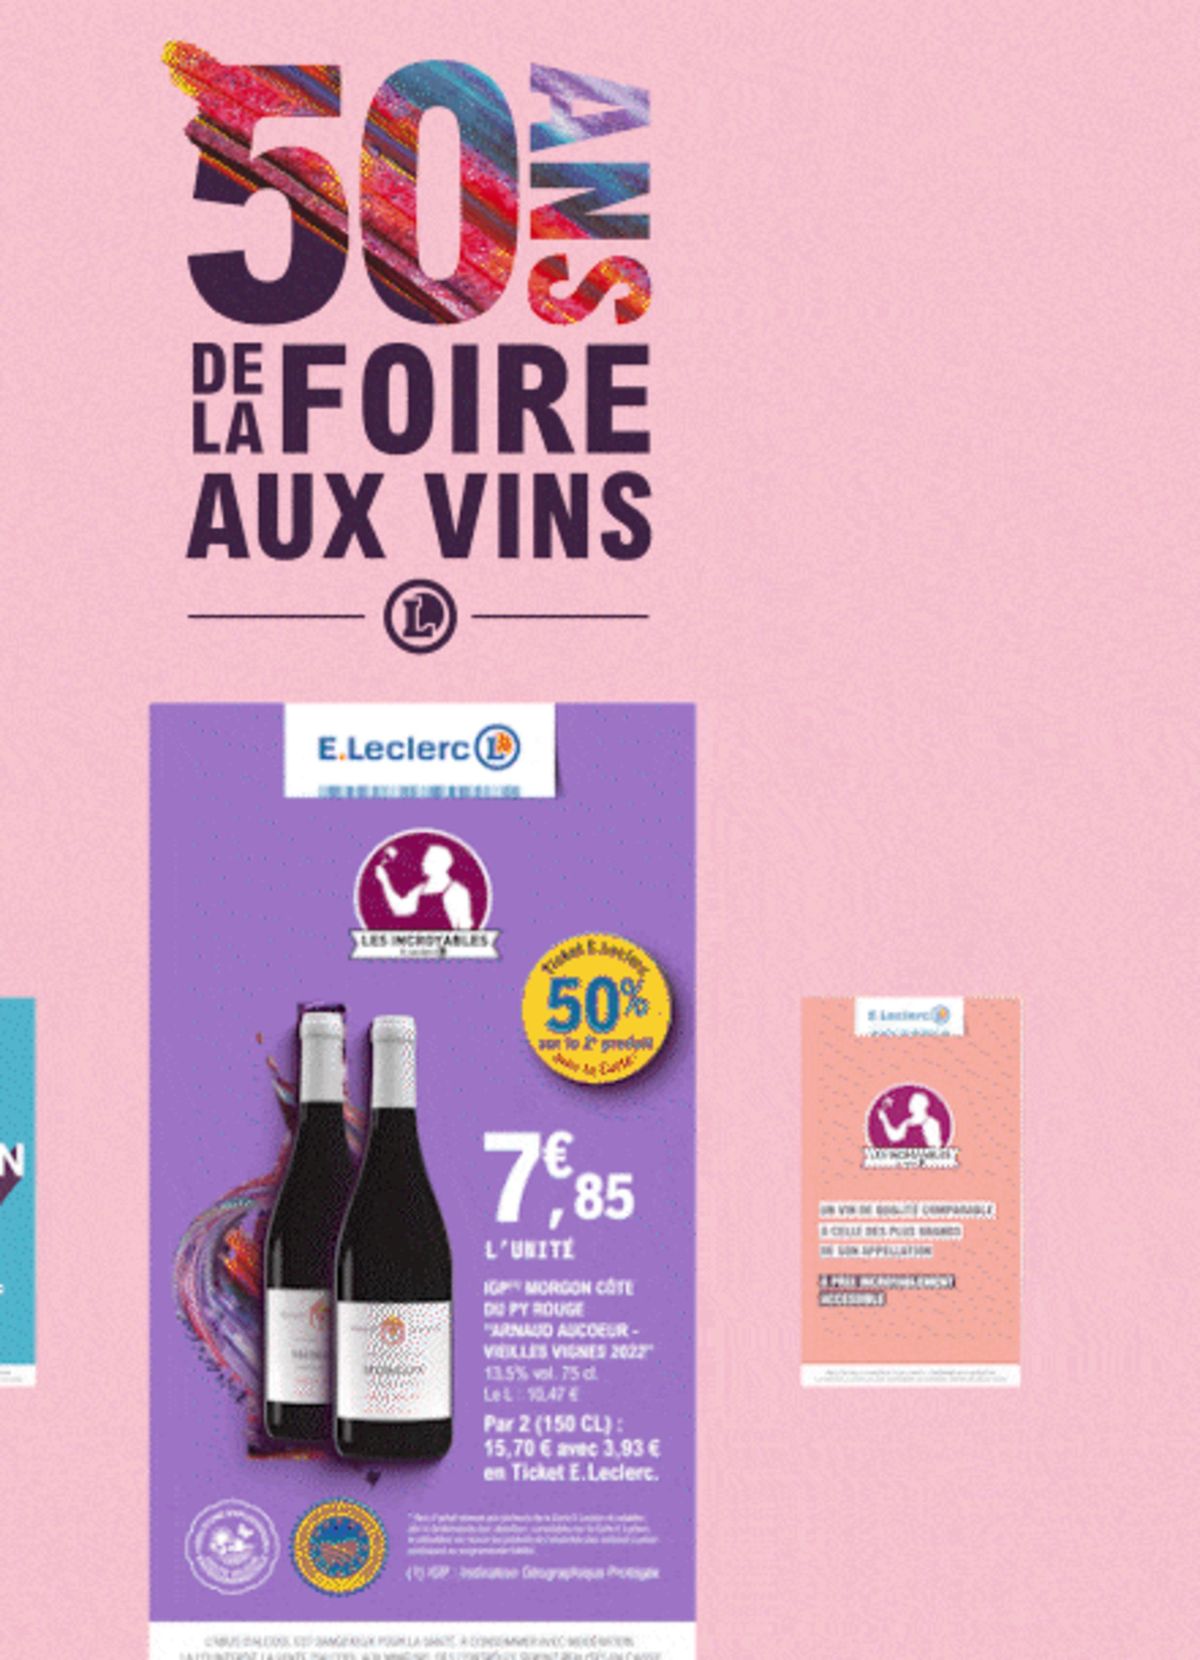 Catalogue Foire Aux Vins - Mixte, page 00286